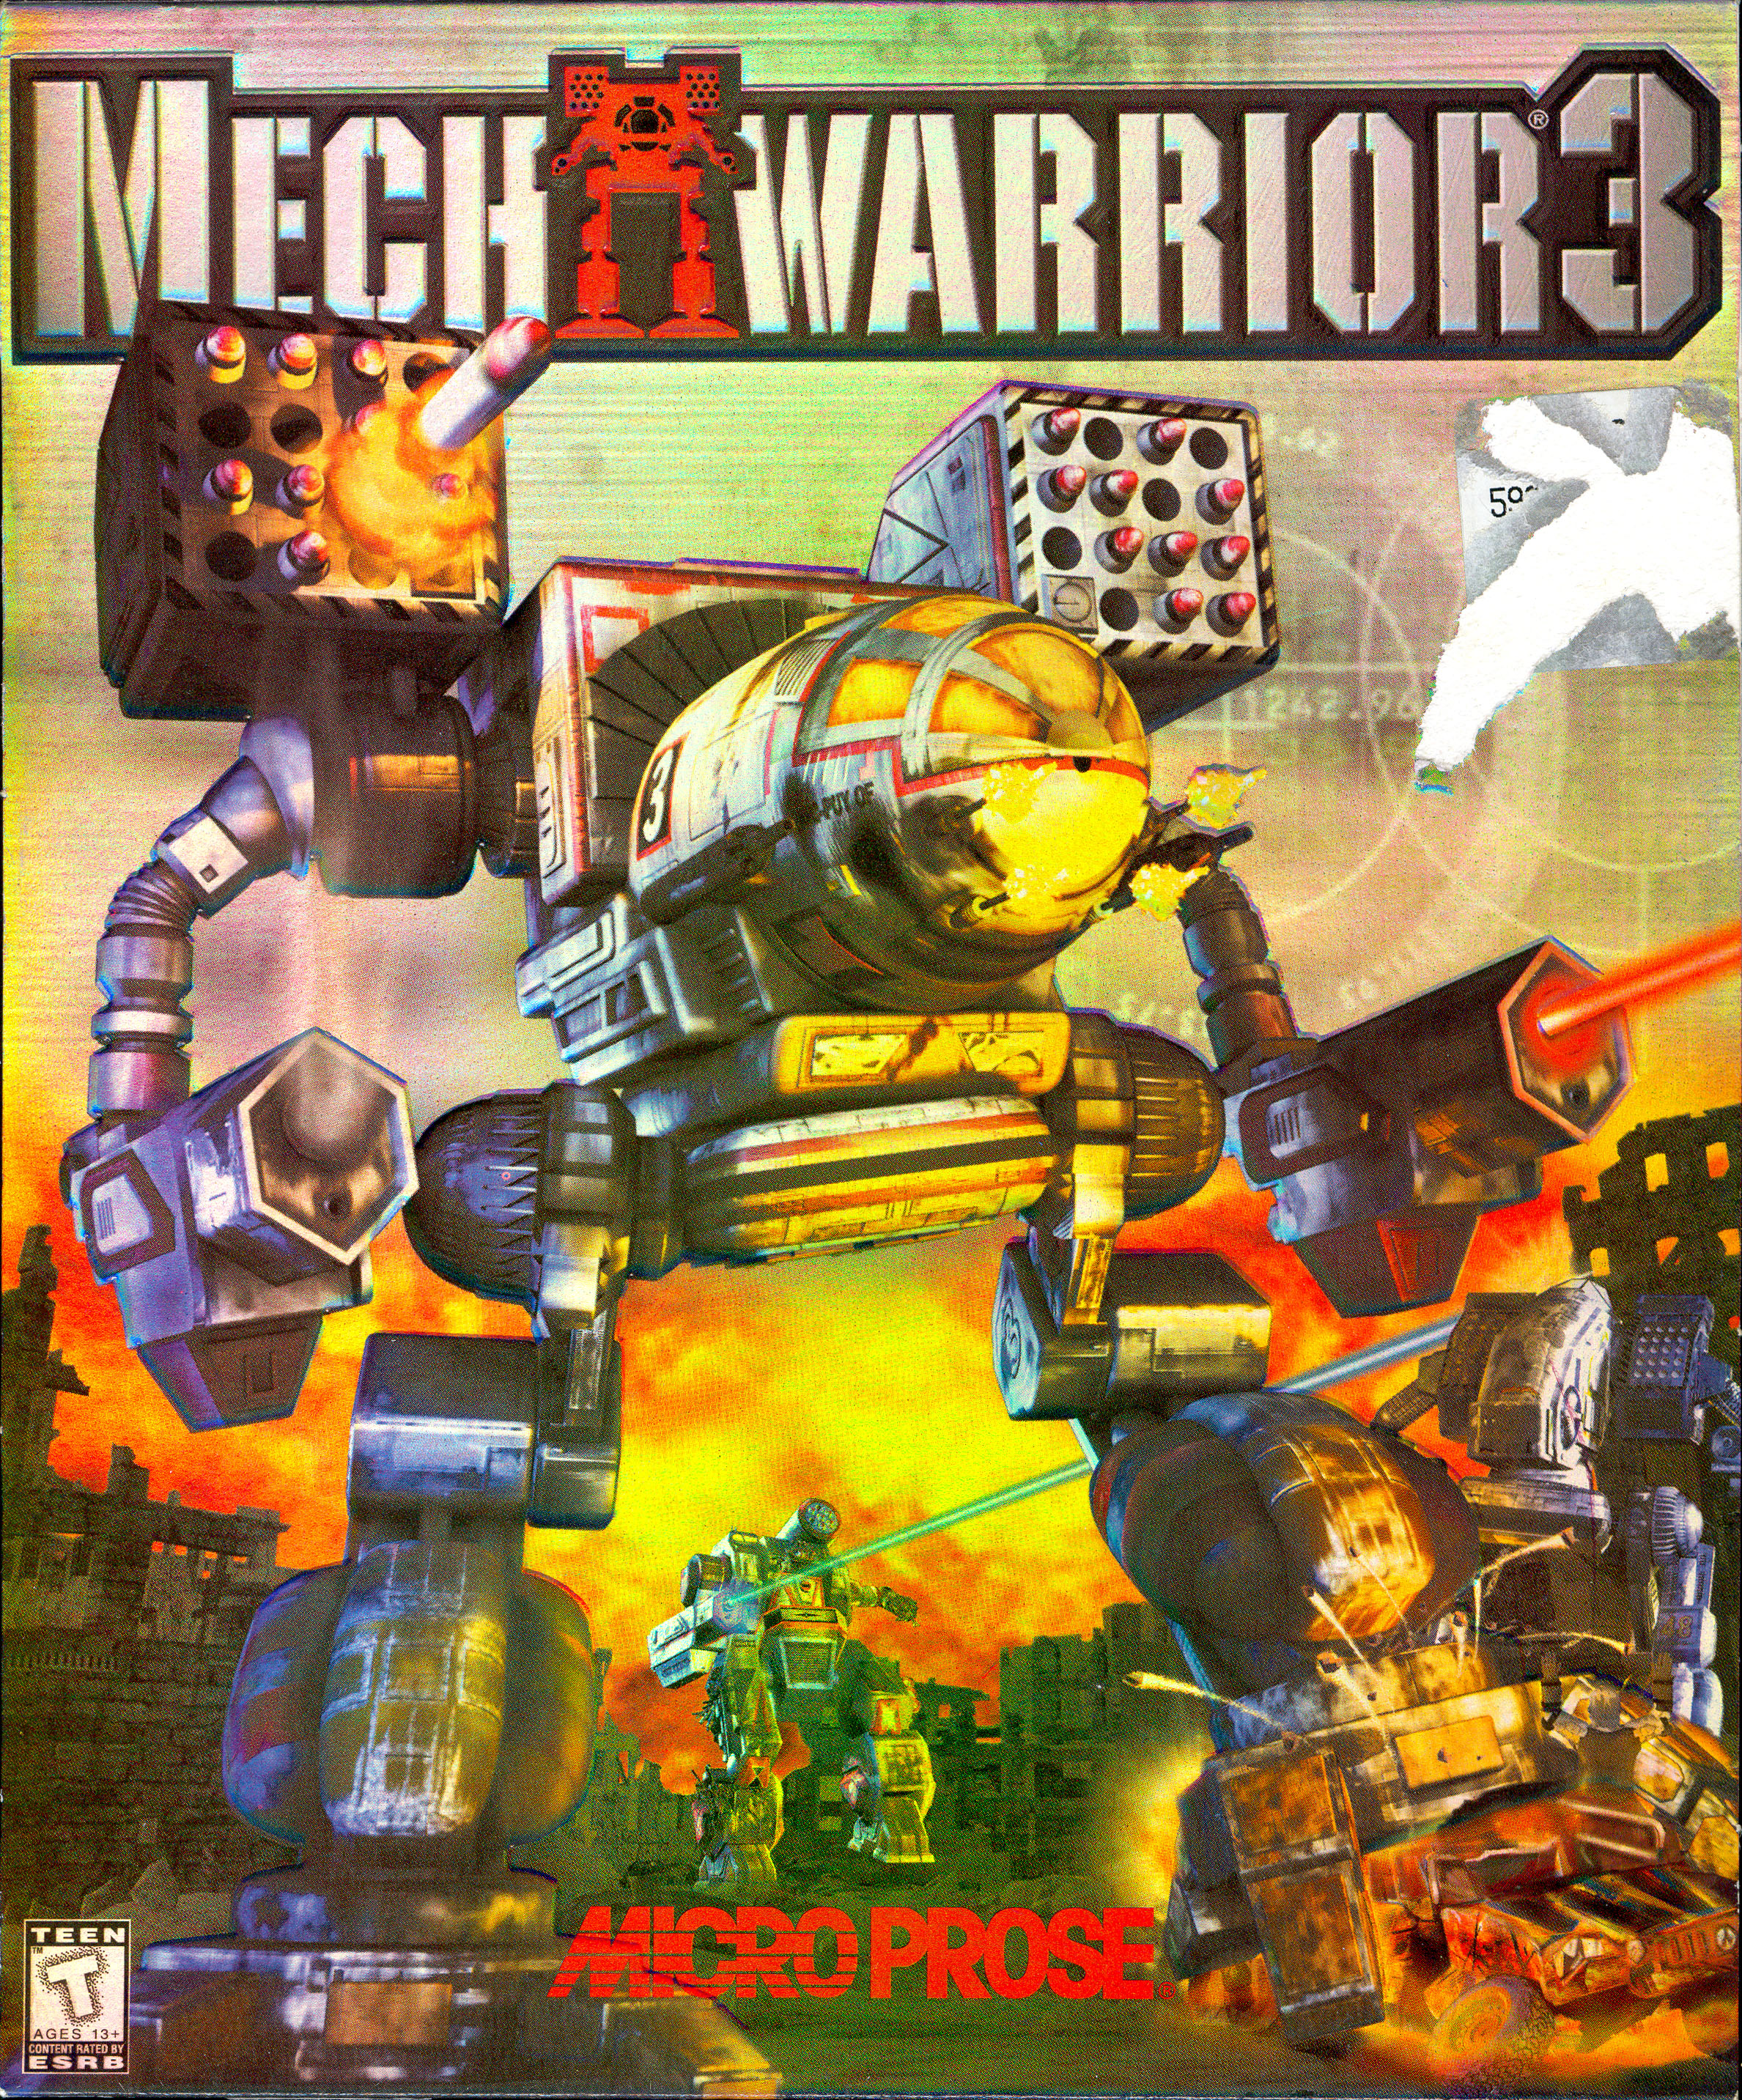 Mechwarrior 3. Mechwarrior 3 1999. Mechwarrior 4 Mercenaries обложка. Mechwarrior 1989 обложка. Mechwarrior 5: Mercenaries обложка.